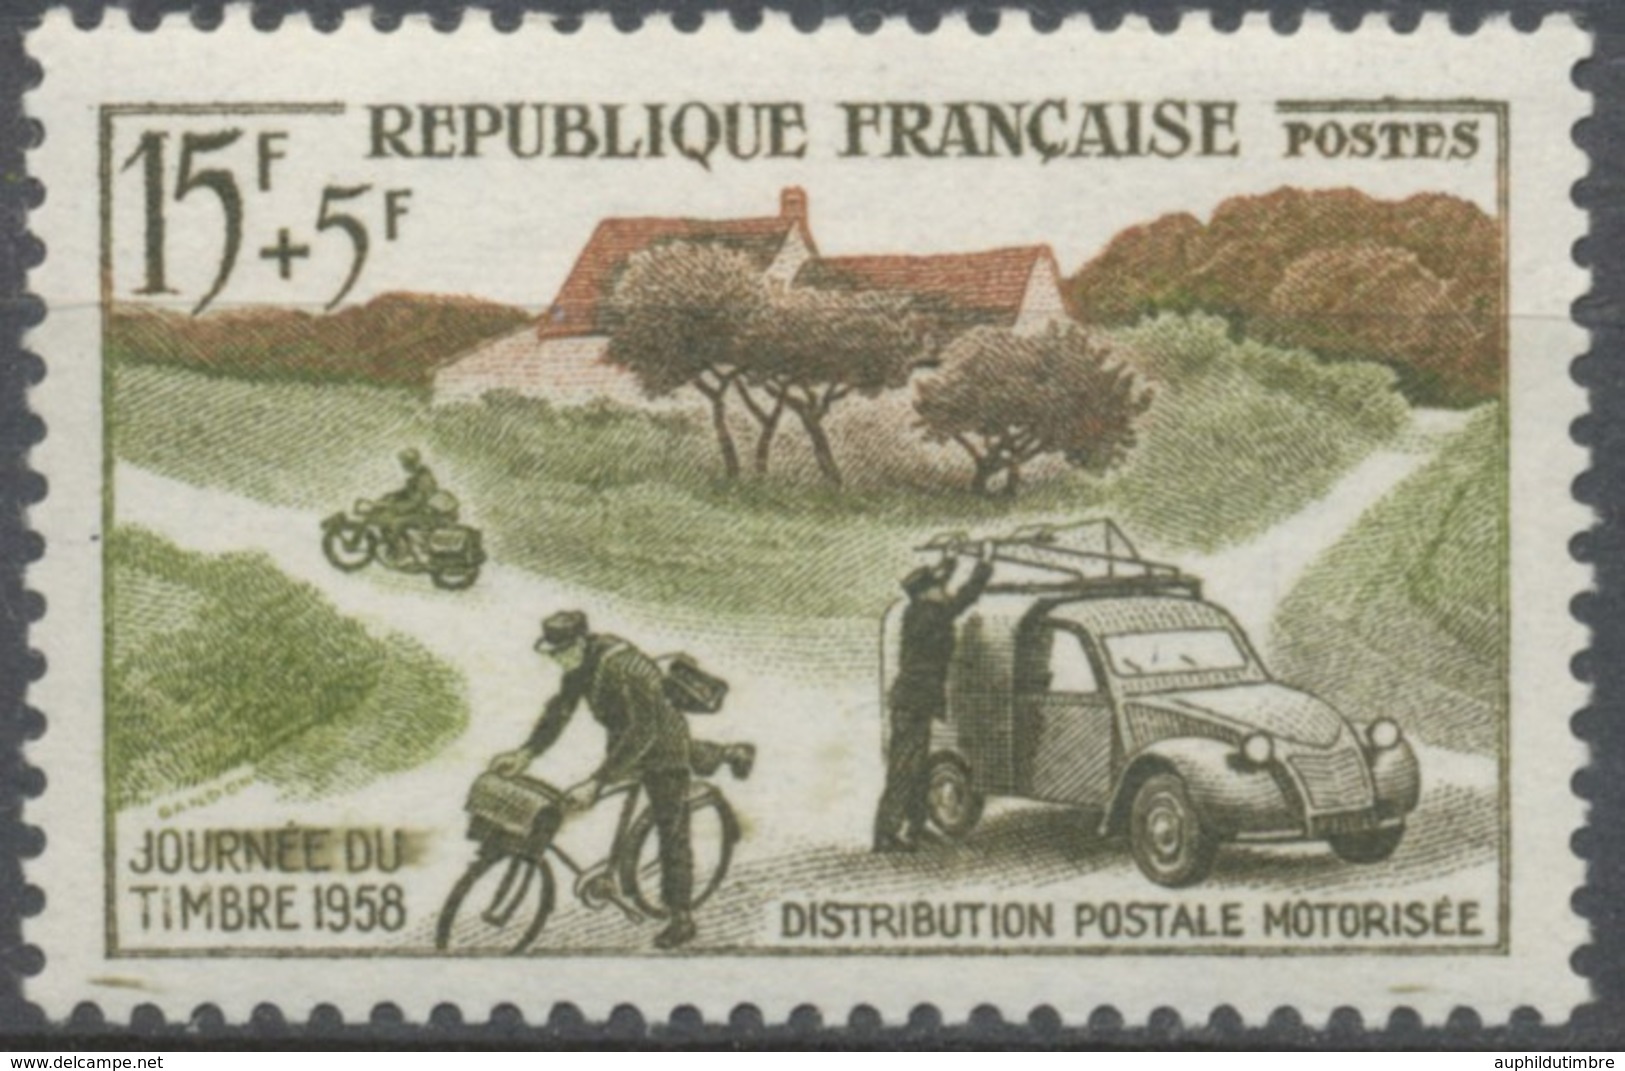 Journée Du Timbre. Mécanisation De La Distribution Rurale 15f. + 5f. Vert-brun Et Olive Foncé. Neuf Luxe ** Y1151 - Unused Stamps